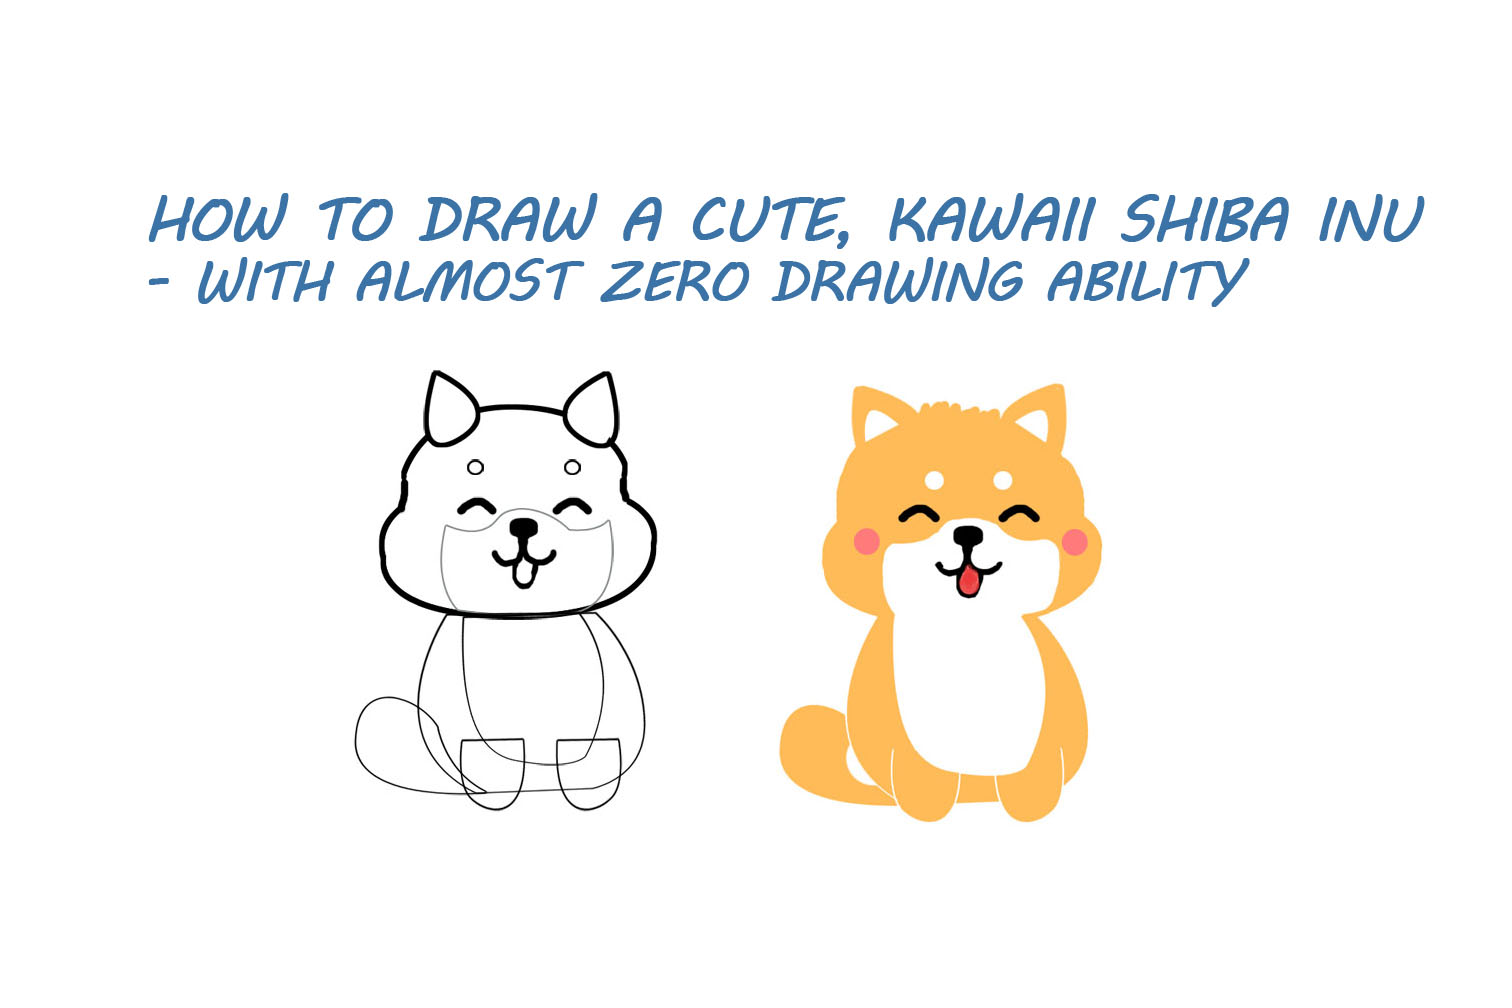 How to draw Shiba Inu